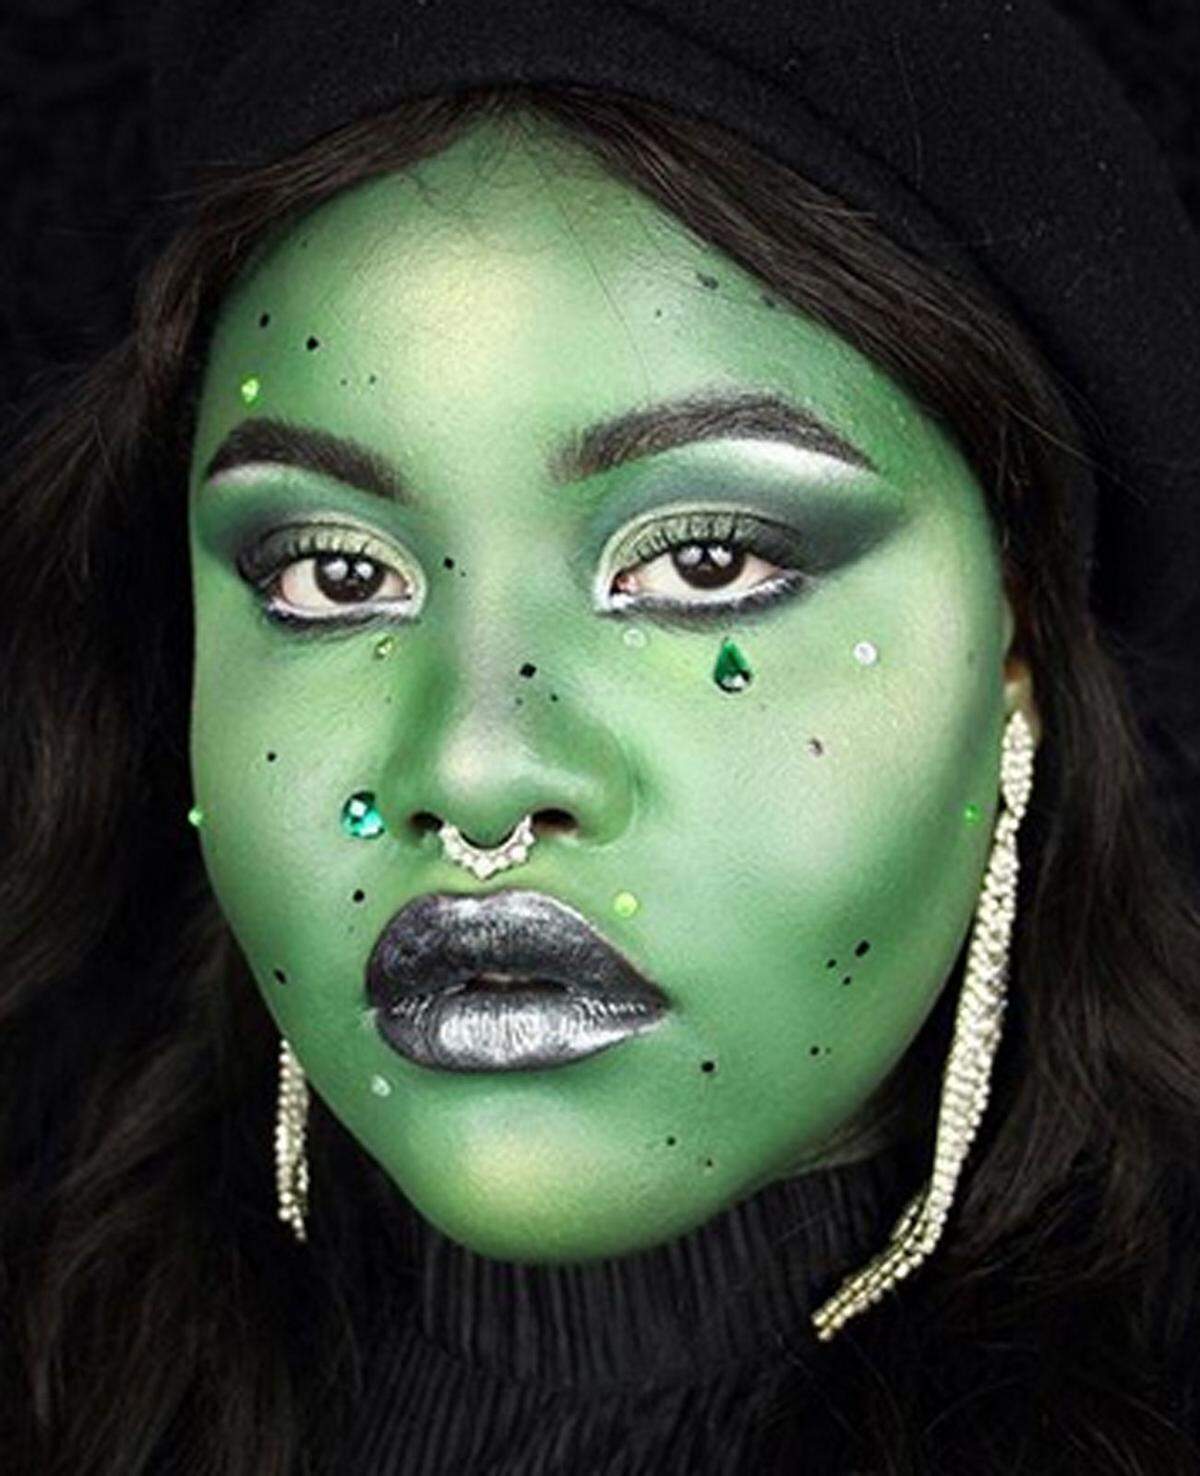 Die grüne "Wicked Witch from the West" in einer Interpretation von Naomi.